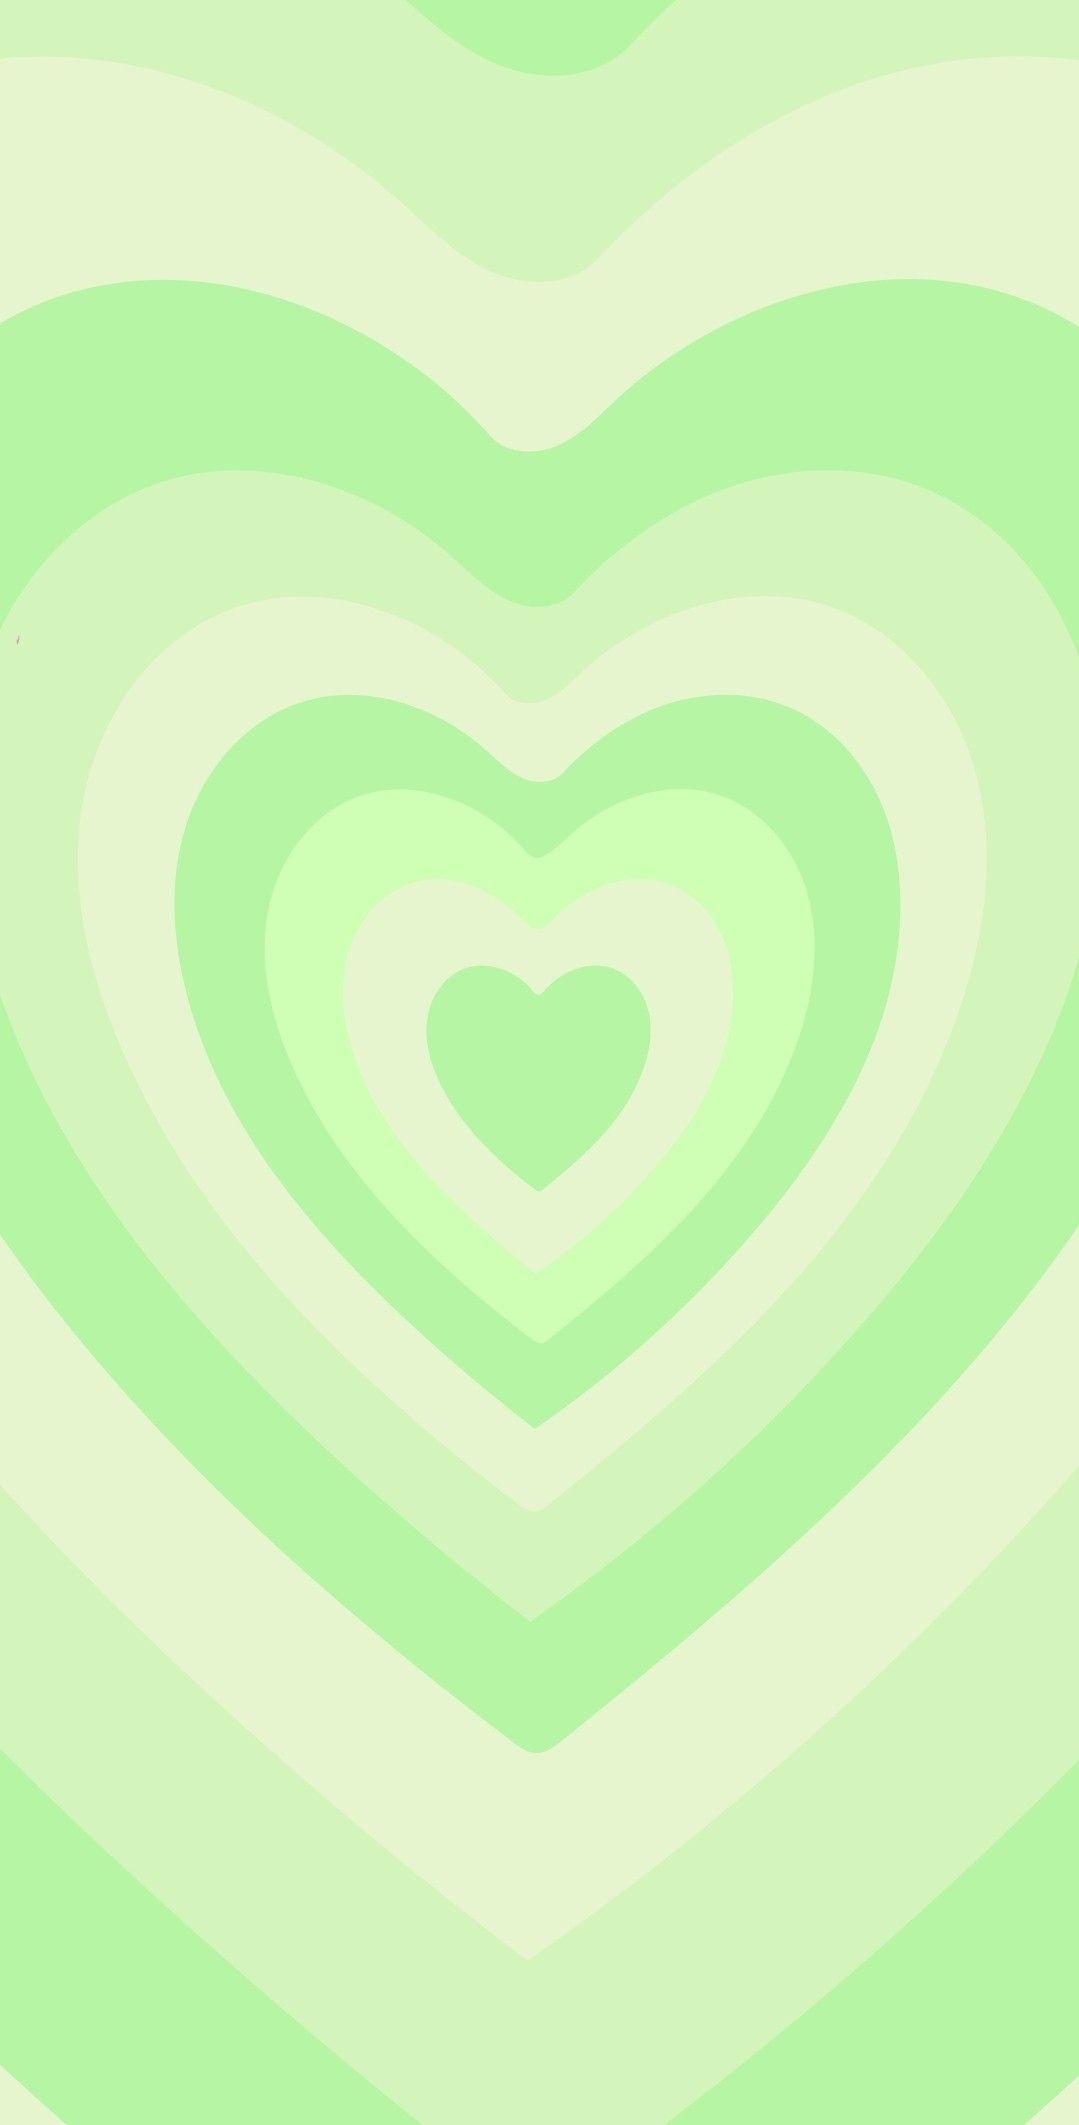 Hình nền trái tim mỹ thuật màu xanh lá cây sẽ mang lại cho bạn cảm giác thư giãn và bình yên. Với nền xanh tươi mát và hình ảnh trái tim êm ái, hình nền này sẽ đem lại cho bạn không gian yên bình và tình yêu vô tận. Hãy cùng xem hình ảnh này để cảm nhận sự đắm say.